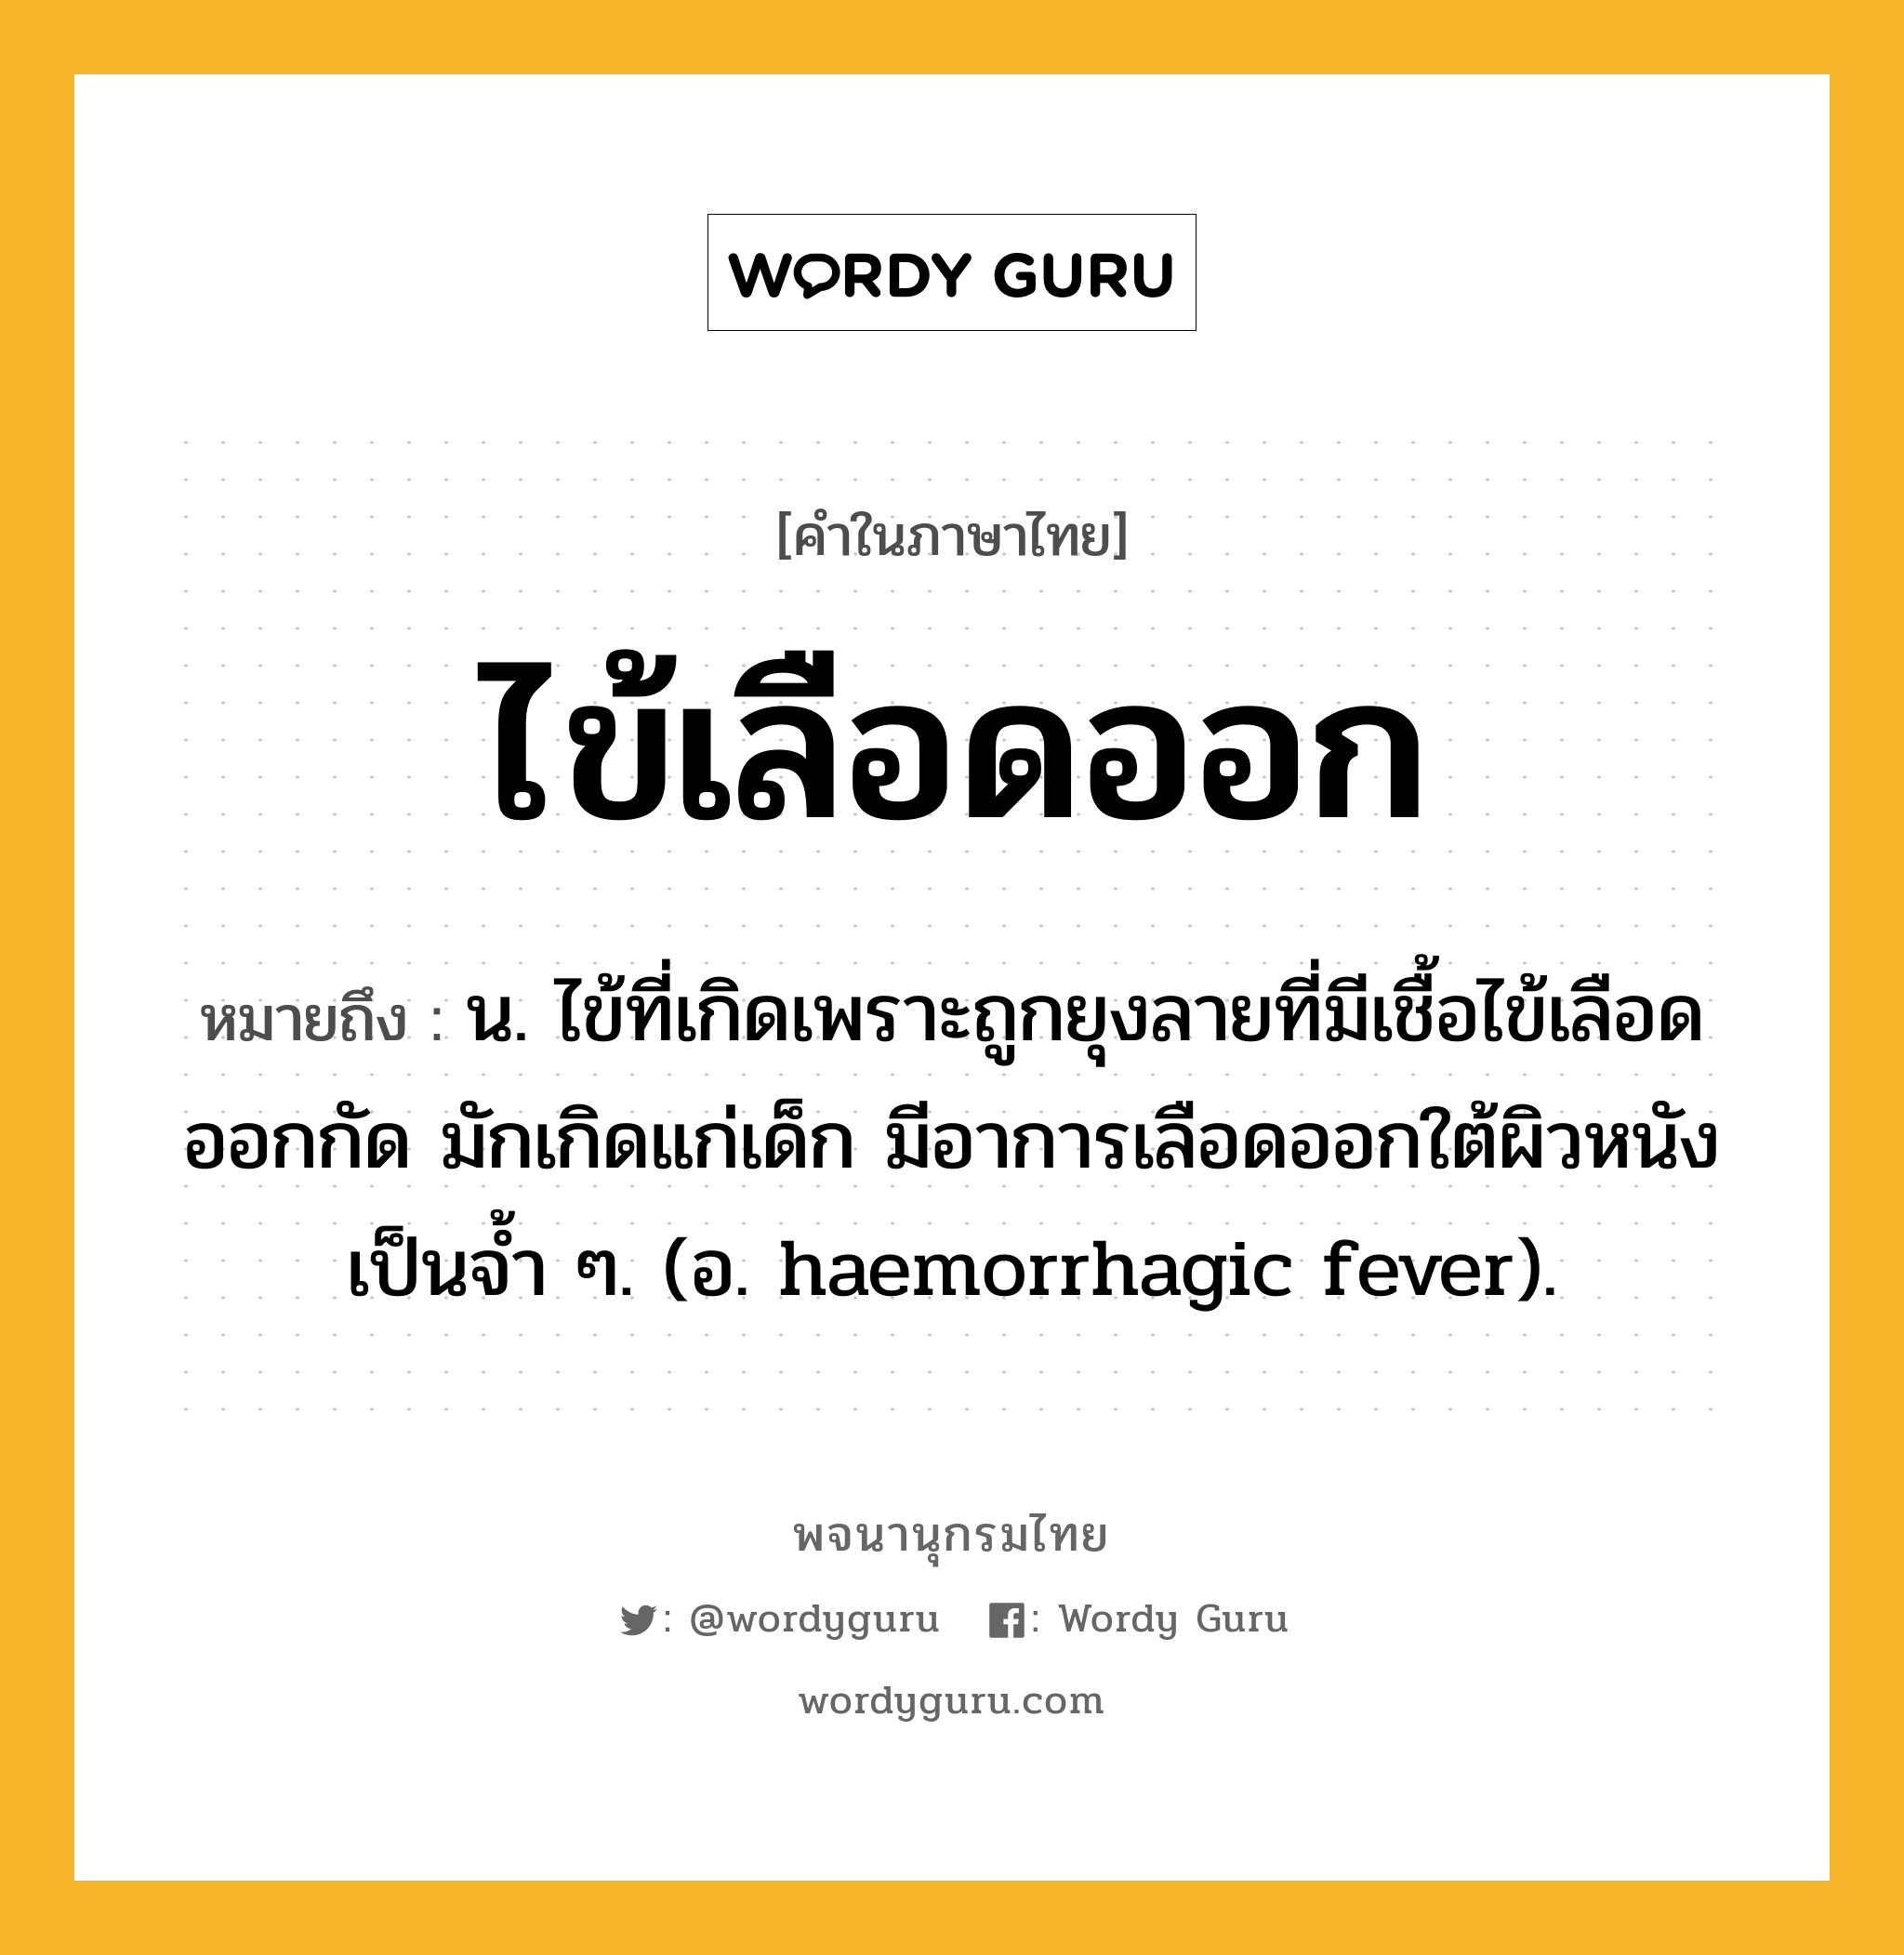 ไข้เลือดออก หมายถึงอะไร?, คำในภาษาไทย ไข้เลือดออก หมายถึง น. ไข้ที่เกิดเพราะถูกยุงลายที่มีเชื้อไข้เลือดออกกัด มักเกิดแก่เด็ก มีอาการเลือดออกใต้ผิวหนังเป็นจํ้า ๆ. (อ. haemorrhagic fever).